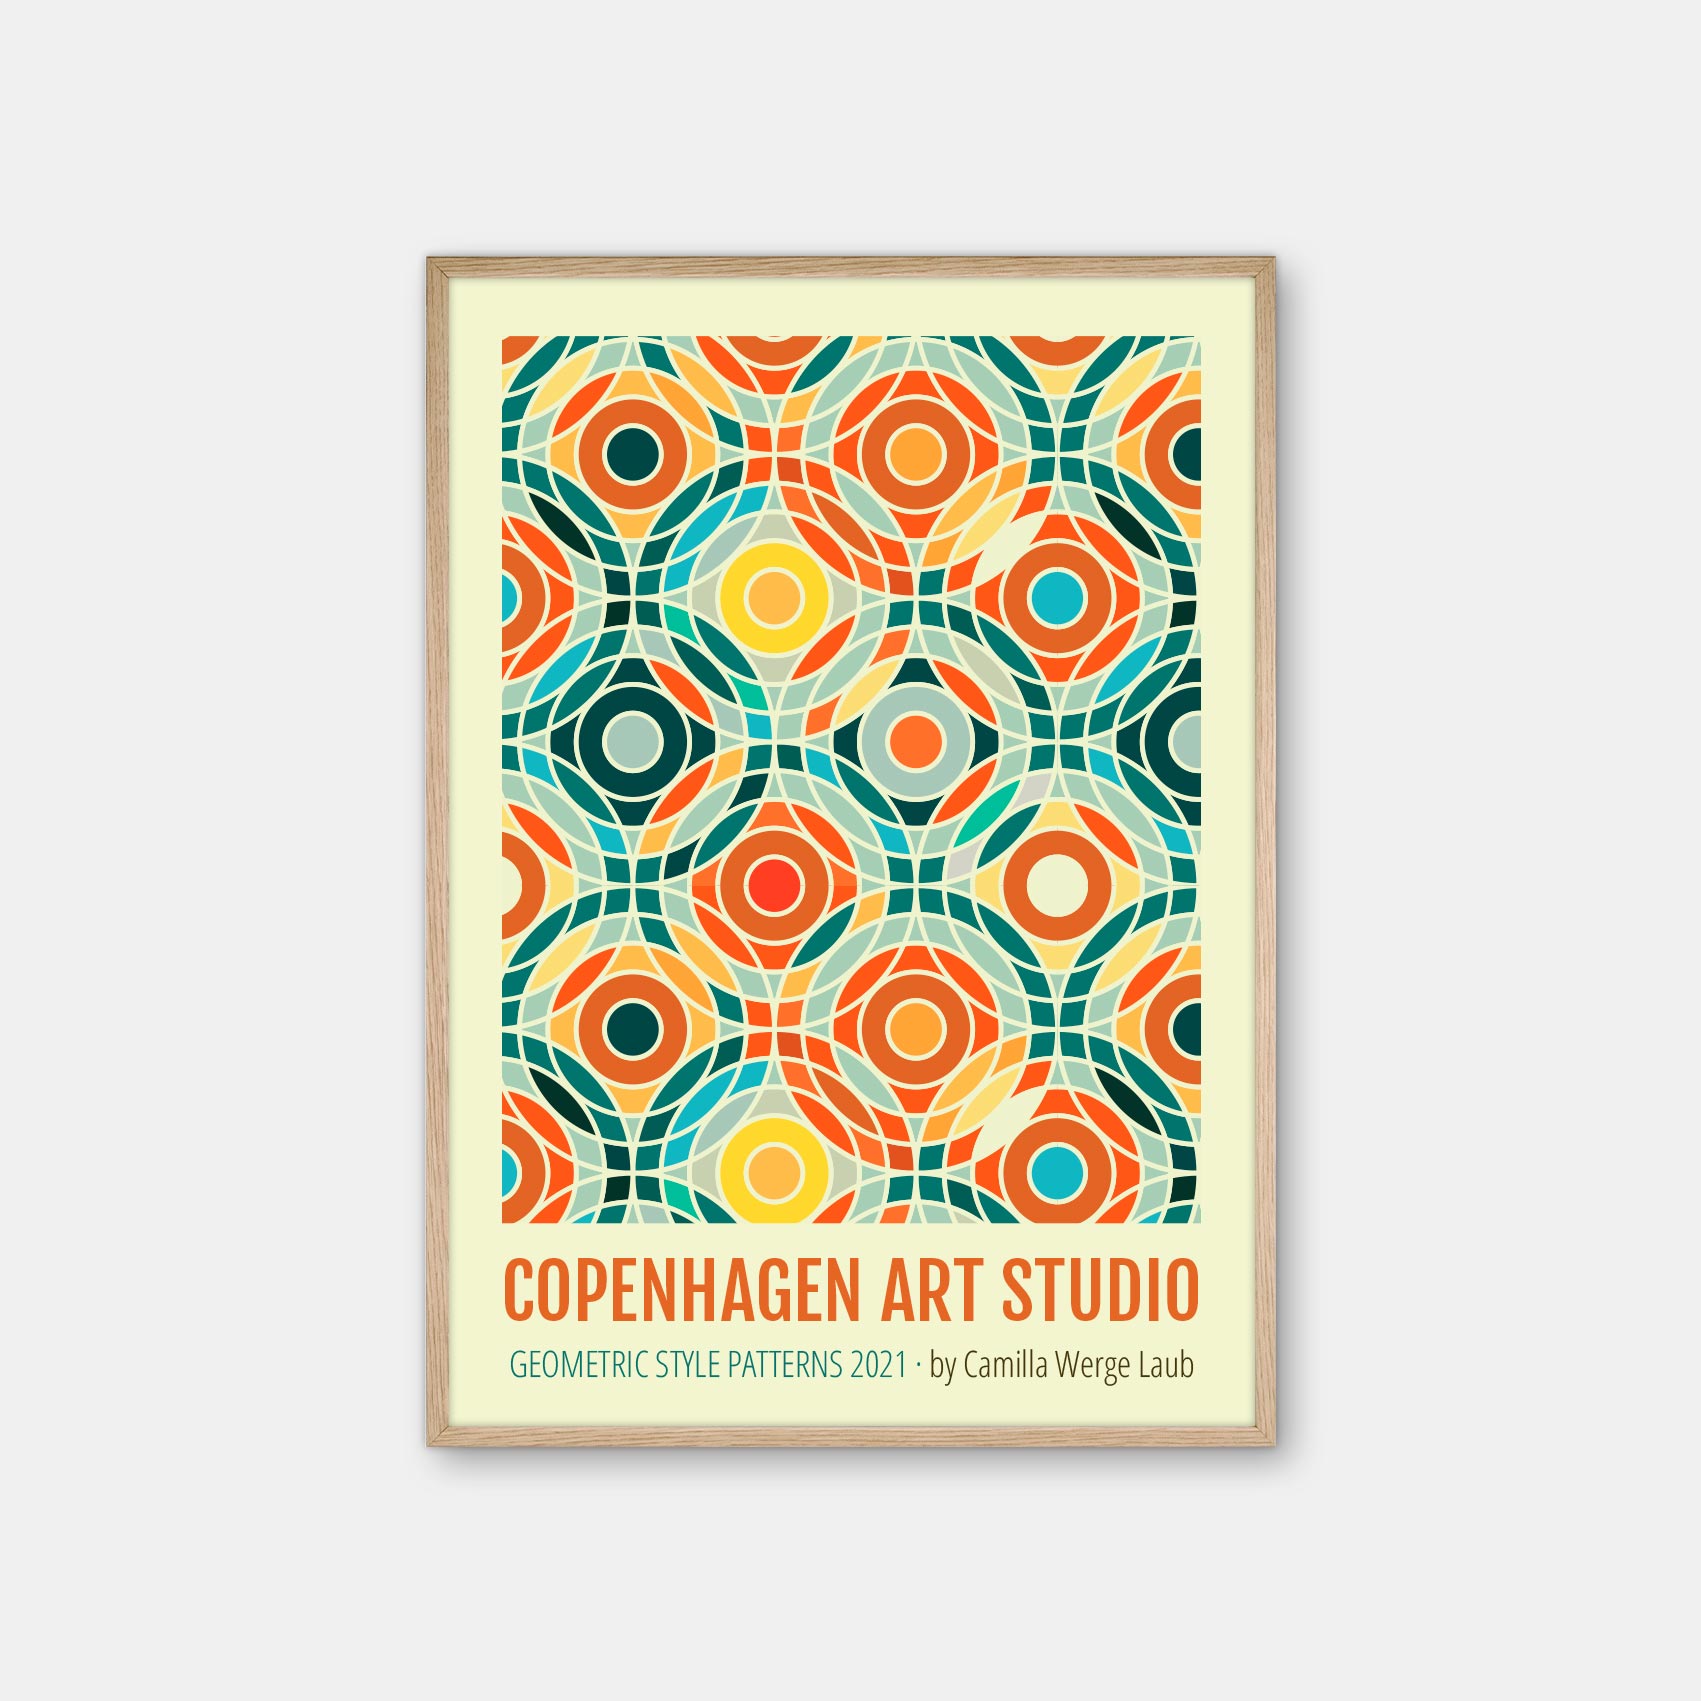 Hurtigt Sway spiller Copenhagen Art Studio + Camilla Werge Laub - Bauhaus